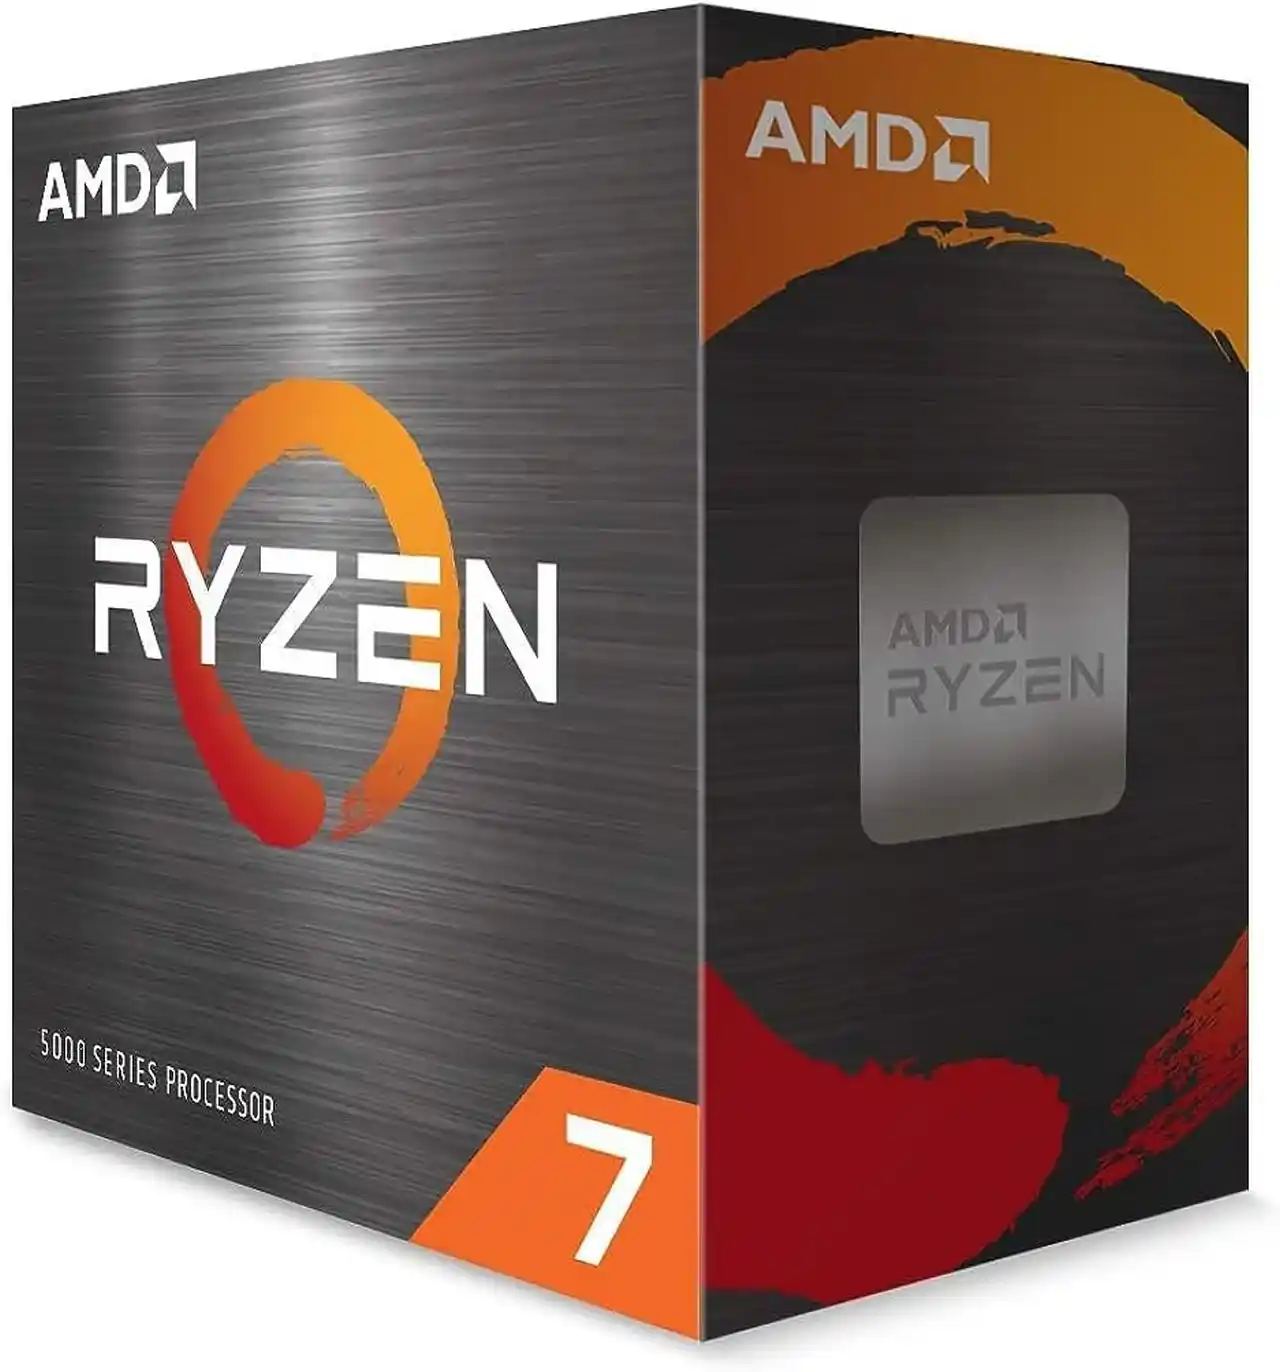 Upgrade PC gaming AMD a basso costo grazie al calo di prezzo dei Ryzen 5000, acquistate il Ryzen 7 5800x a 200 euro